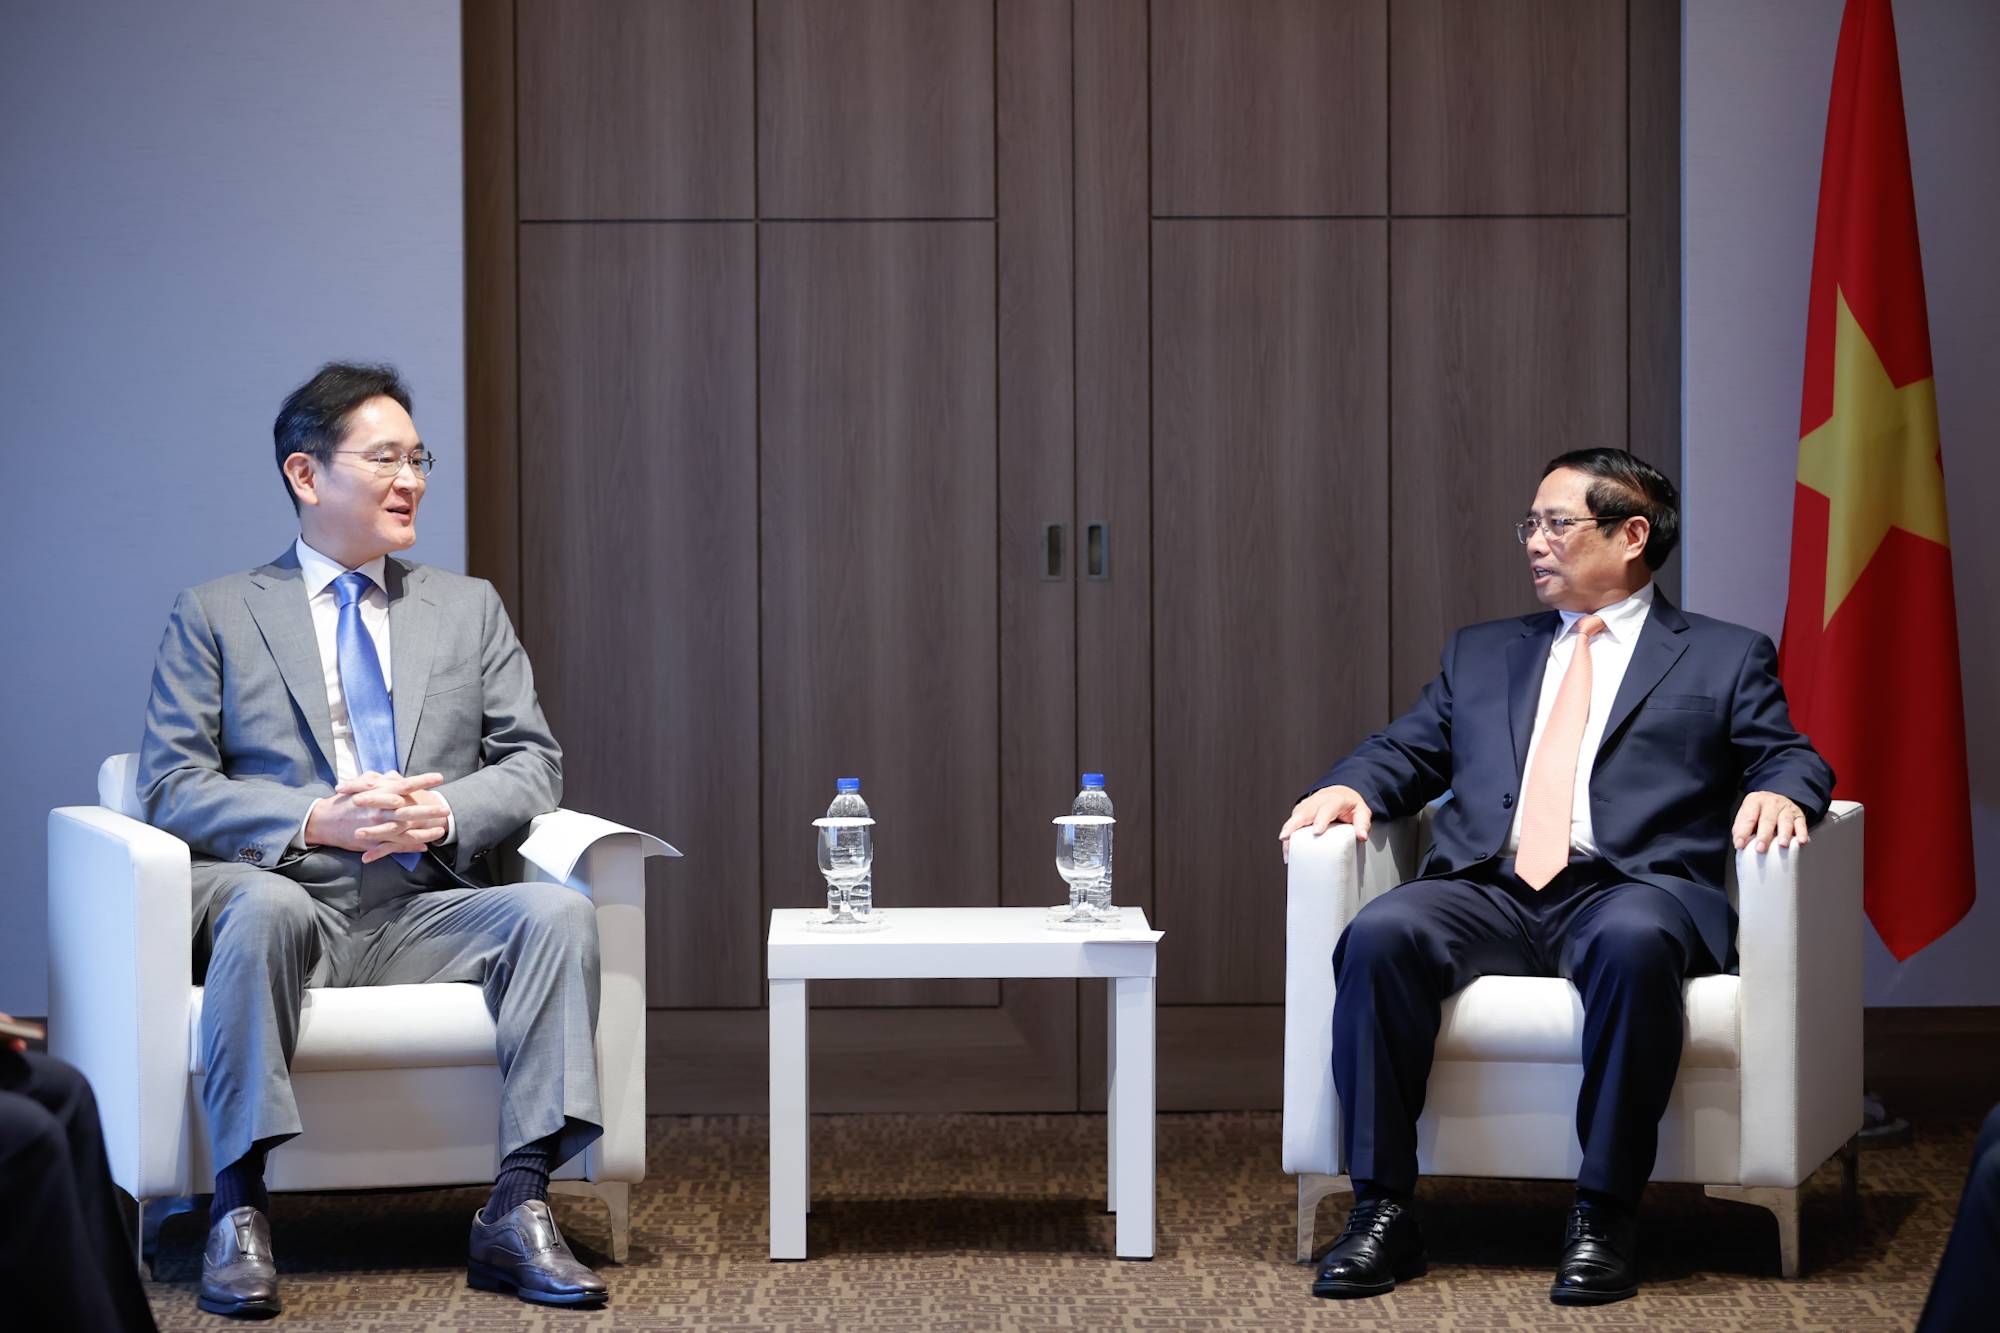 Thủ tướng Phạm Minh Chính đánh giá cao những kết quả của Tập đoàn Samsung trong quá trình đầu tư kinh doanh tại Việt Nam